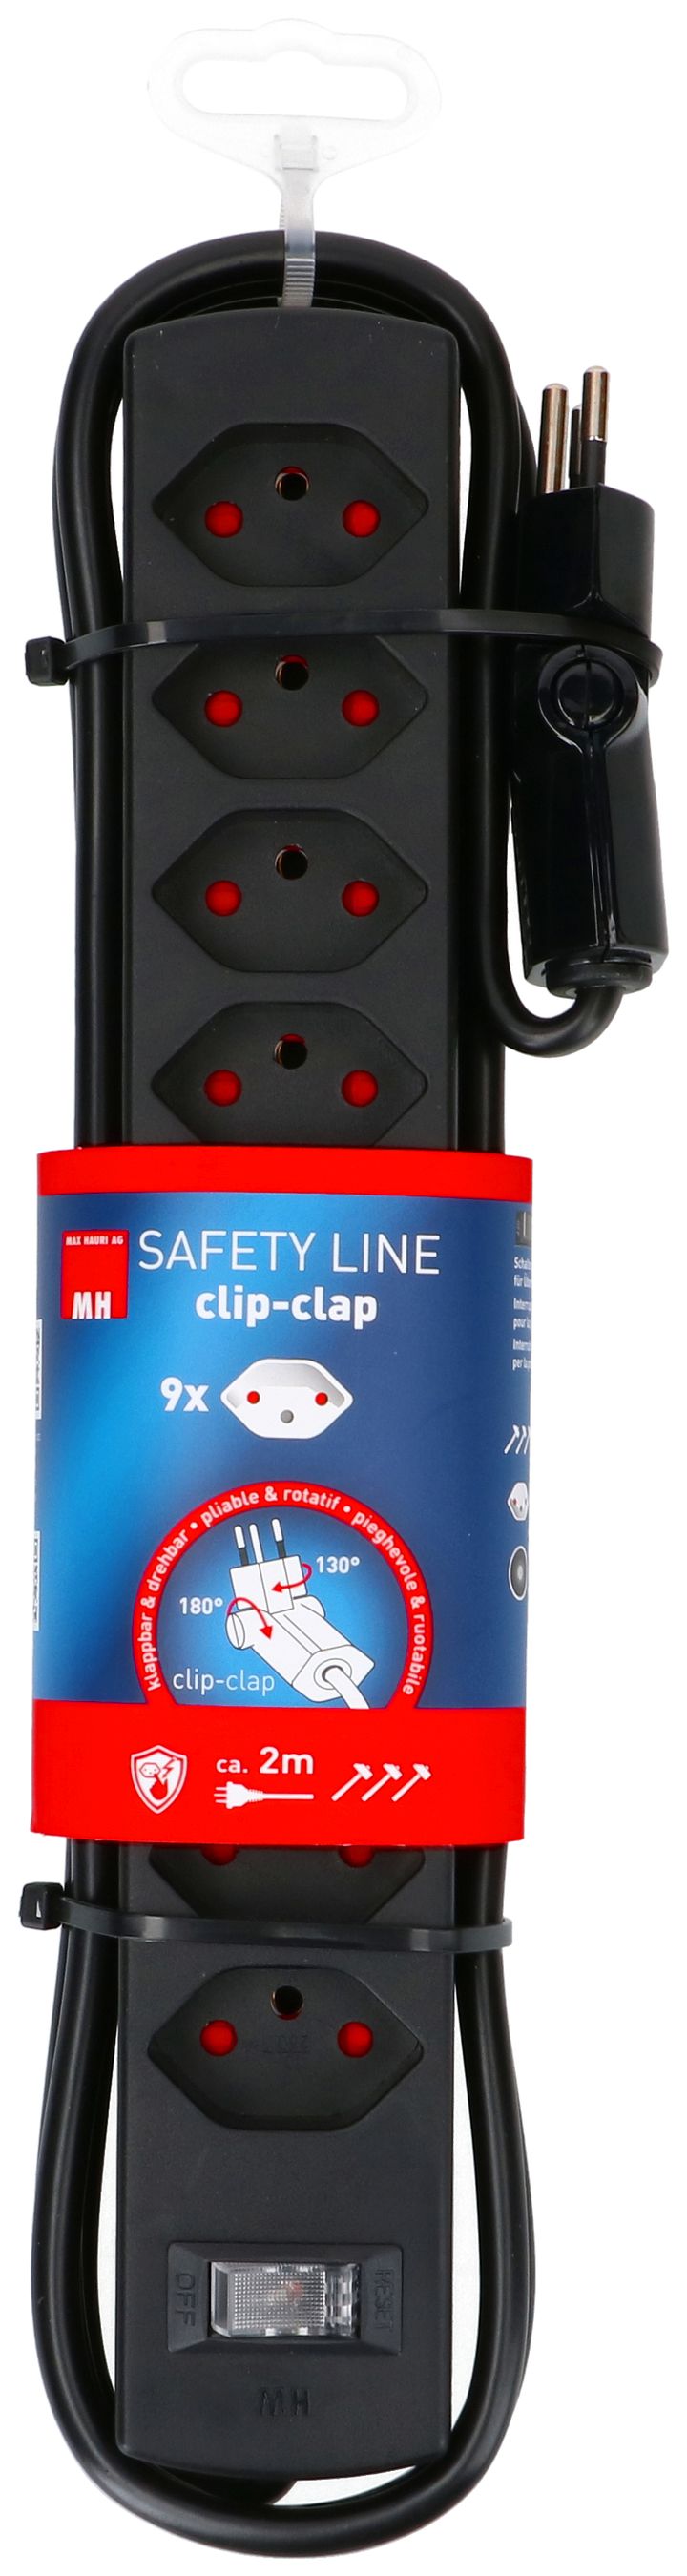 multipresa Safety Line 9x tipo 13 BS nero interruttore 2m cli.